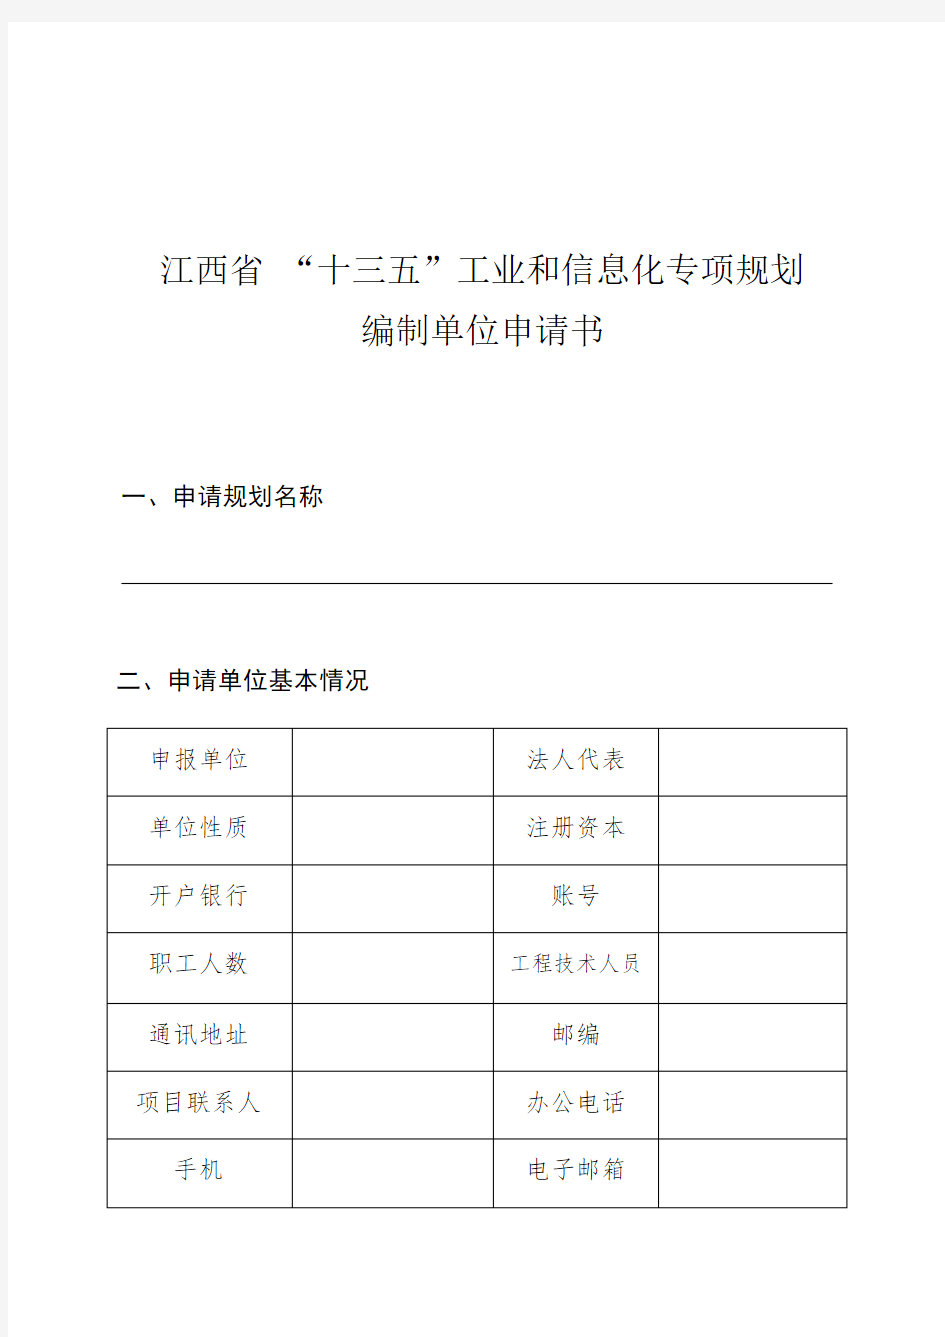 江西省十三五工业和信息化专项规划